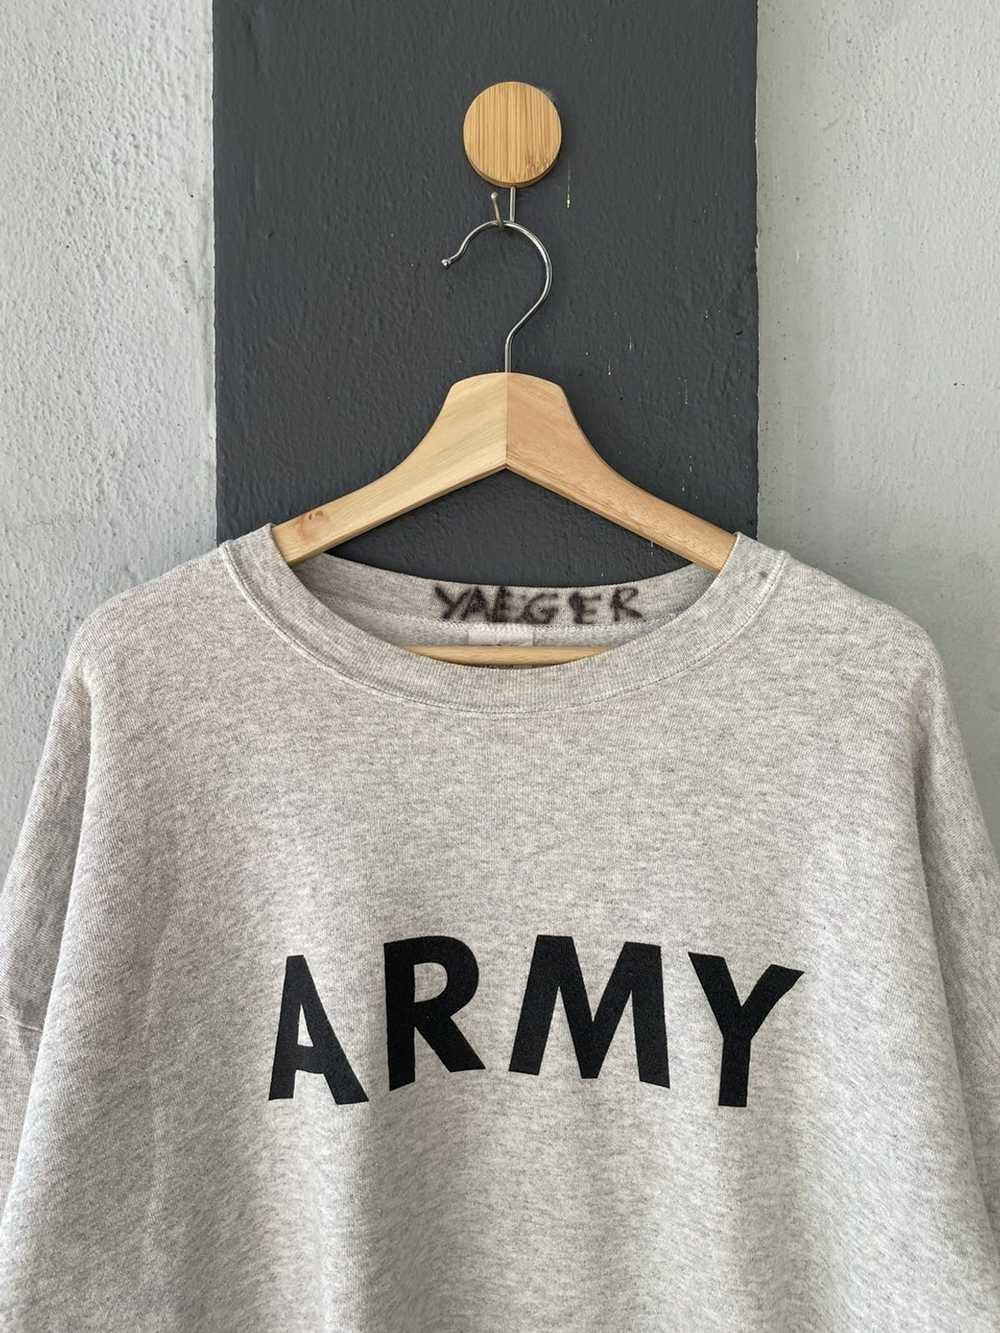 Military × Vintage Vintage Army Sweatshirt - image 3